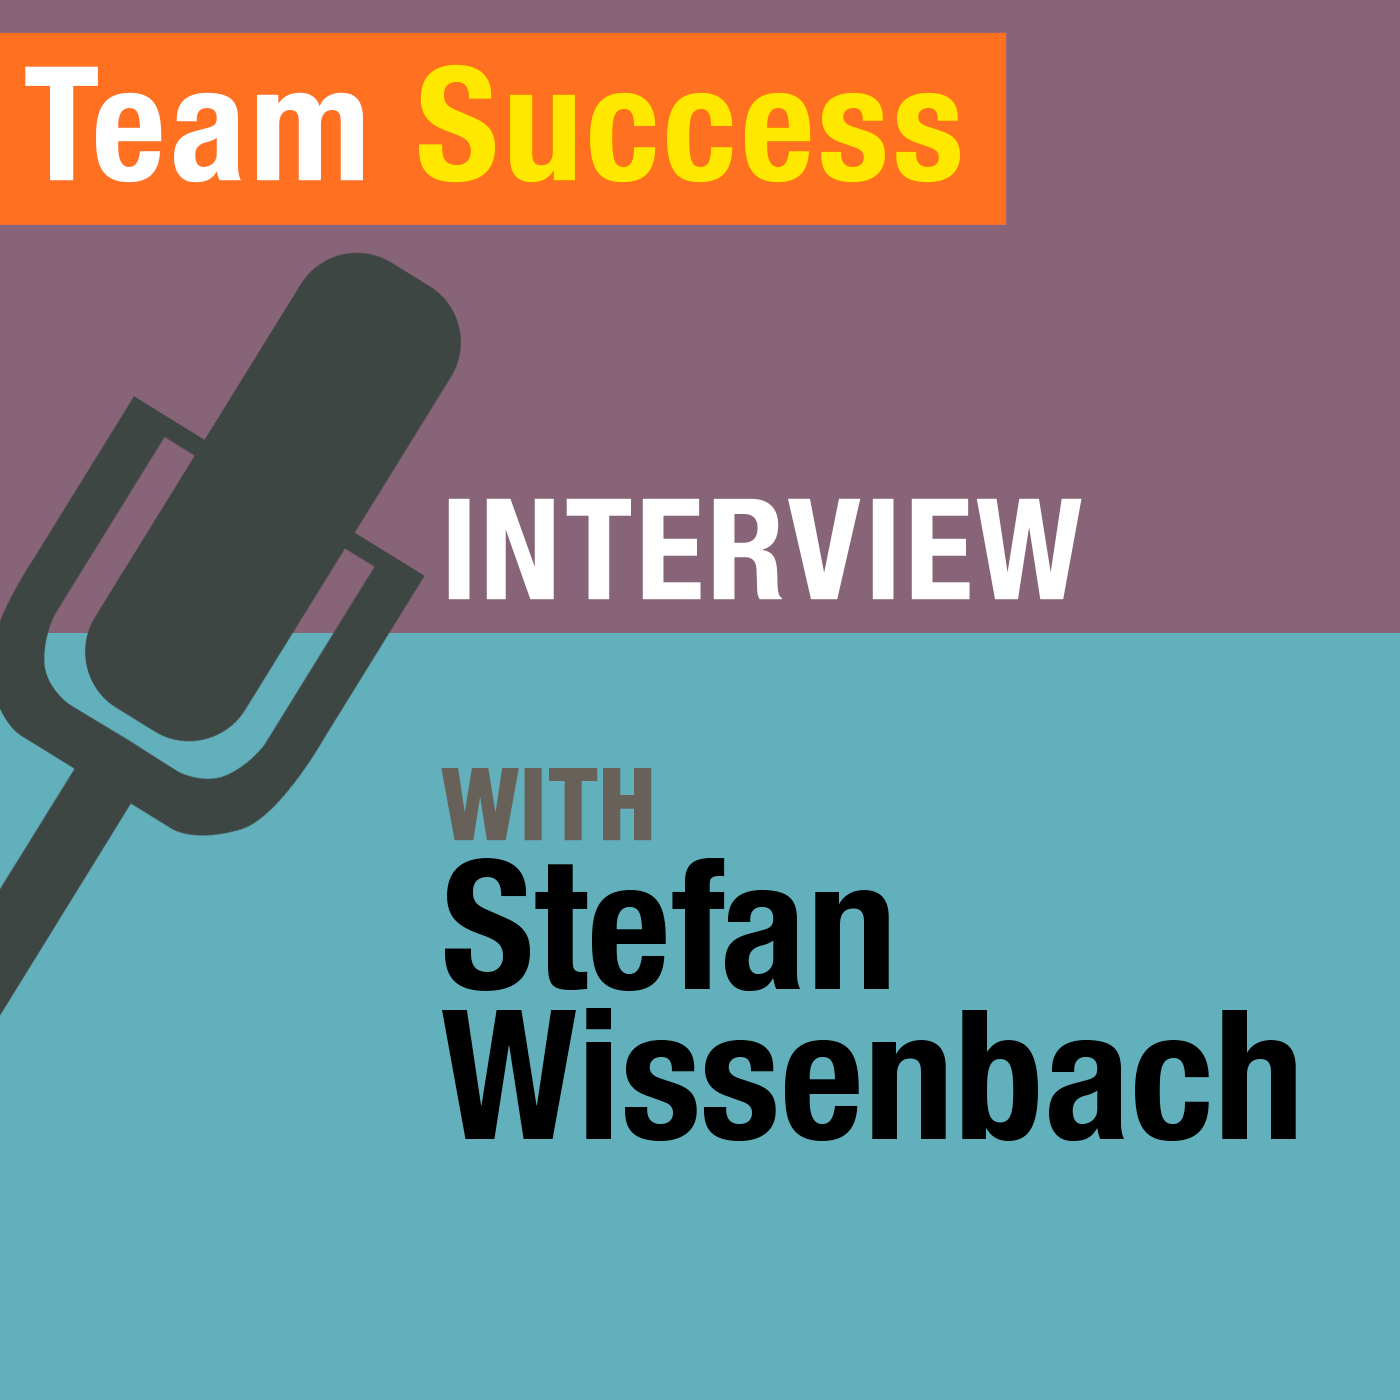 An Interview With Stefan Wissenbach